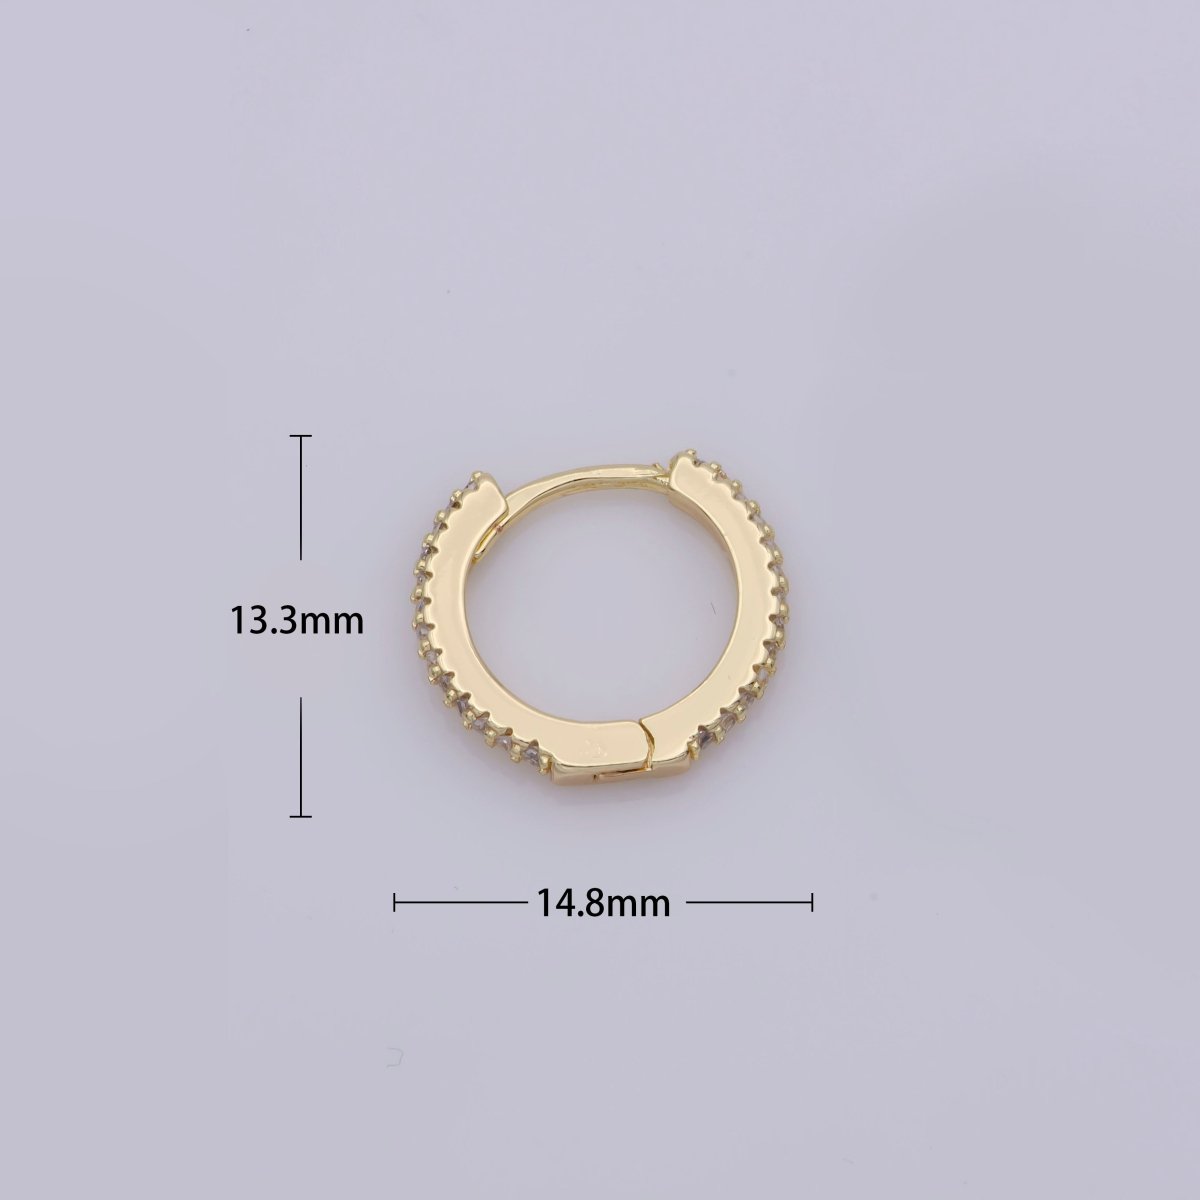 OS 24K Gold Filled Huggie Hoop Earrings, Crystal Cubic Zirconia CZ Encrusted on 14.8X13.3mm Hoops, Minimalist Modern 15mm Huggie Hoops | AE-804 - DLUXCA